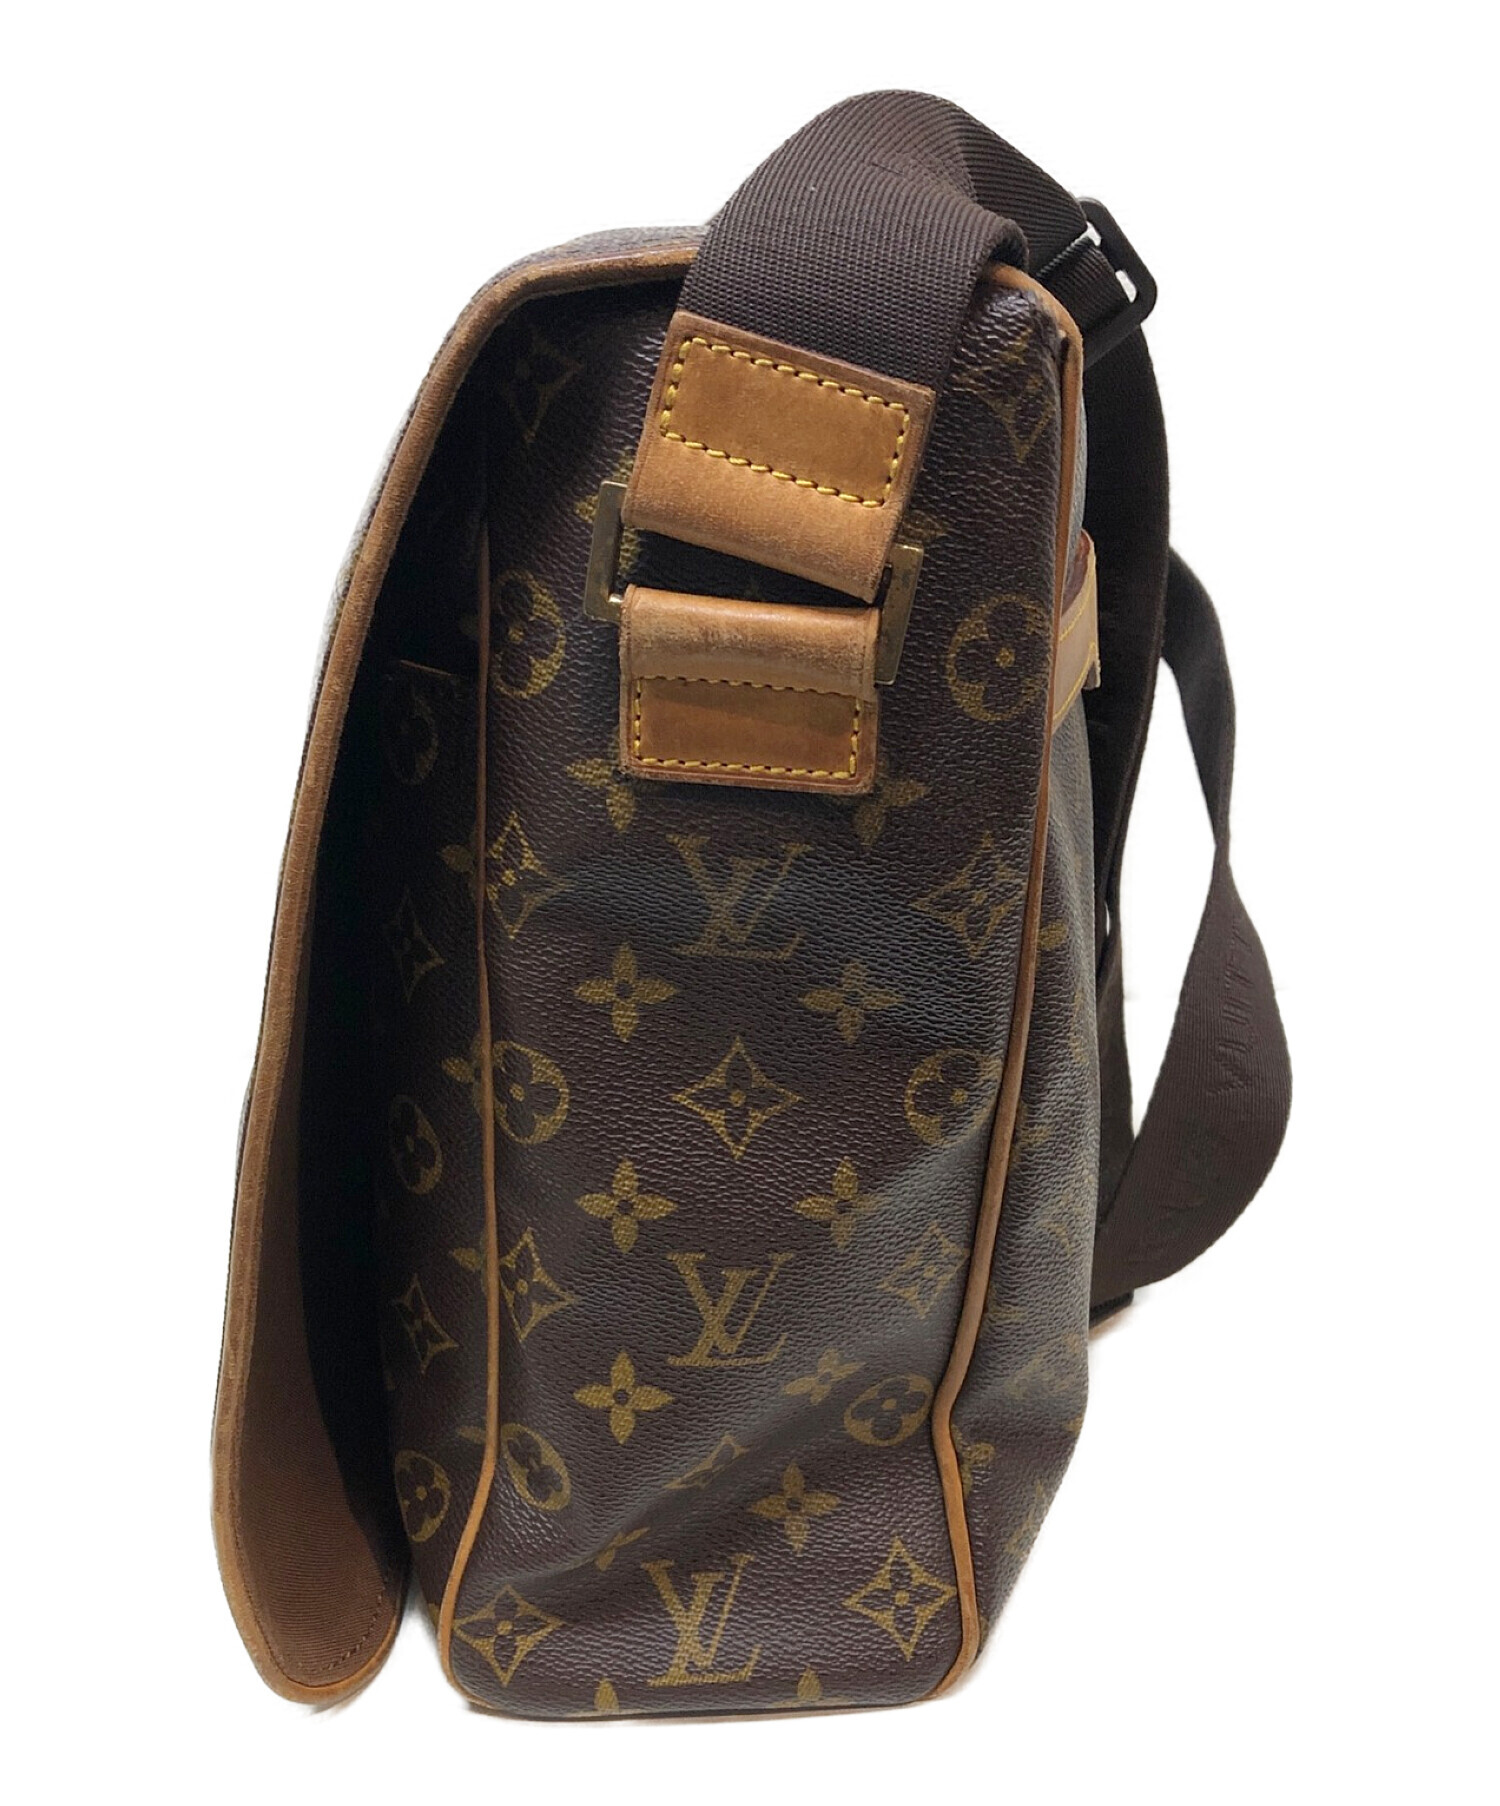 LOUIS VUITTON Louis Vuitton Monogram Abes Shoulder Bag M45257